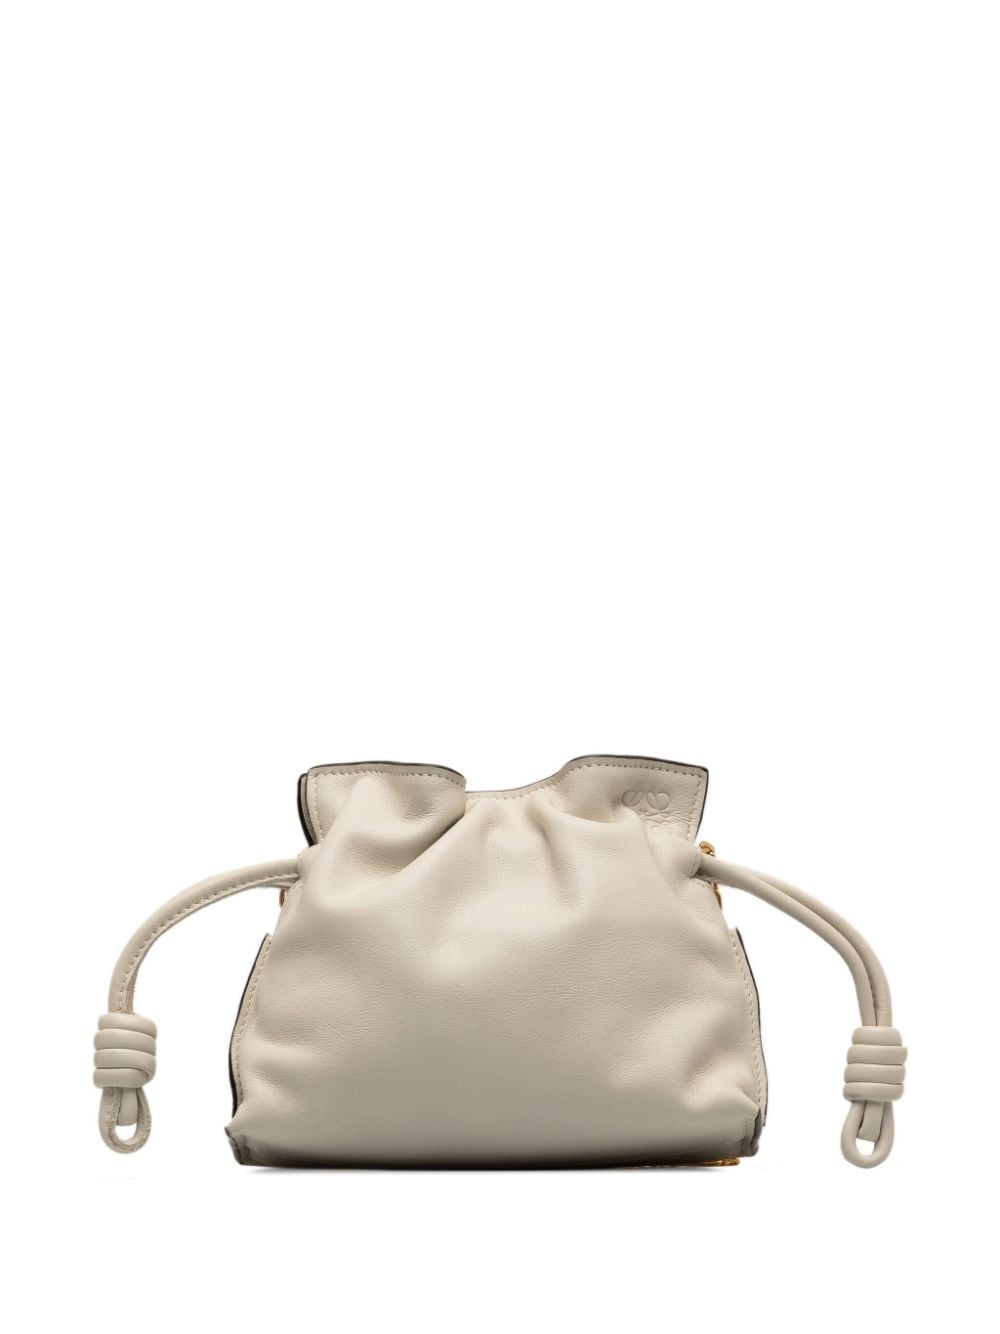 Pre-owned Loewe 2021 Nano Flamenco Knot Clutch Bag In White